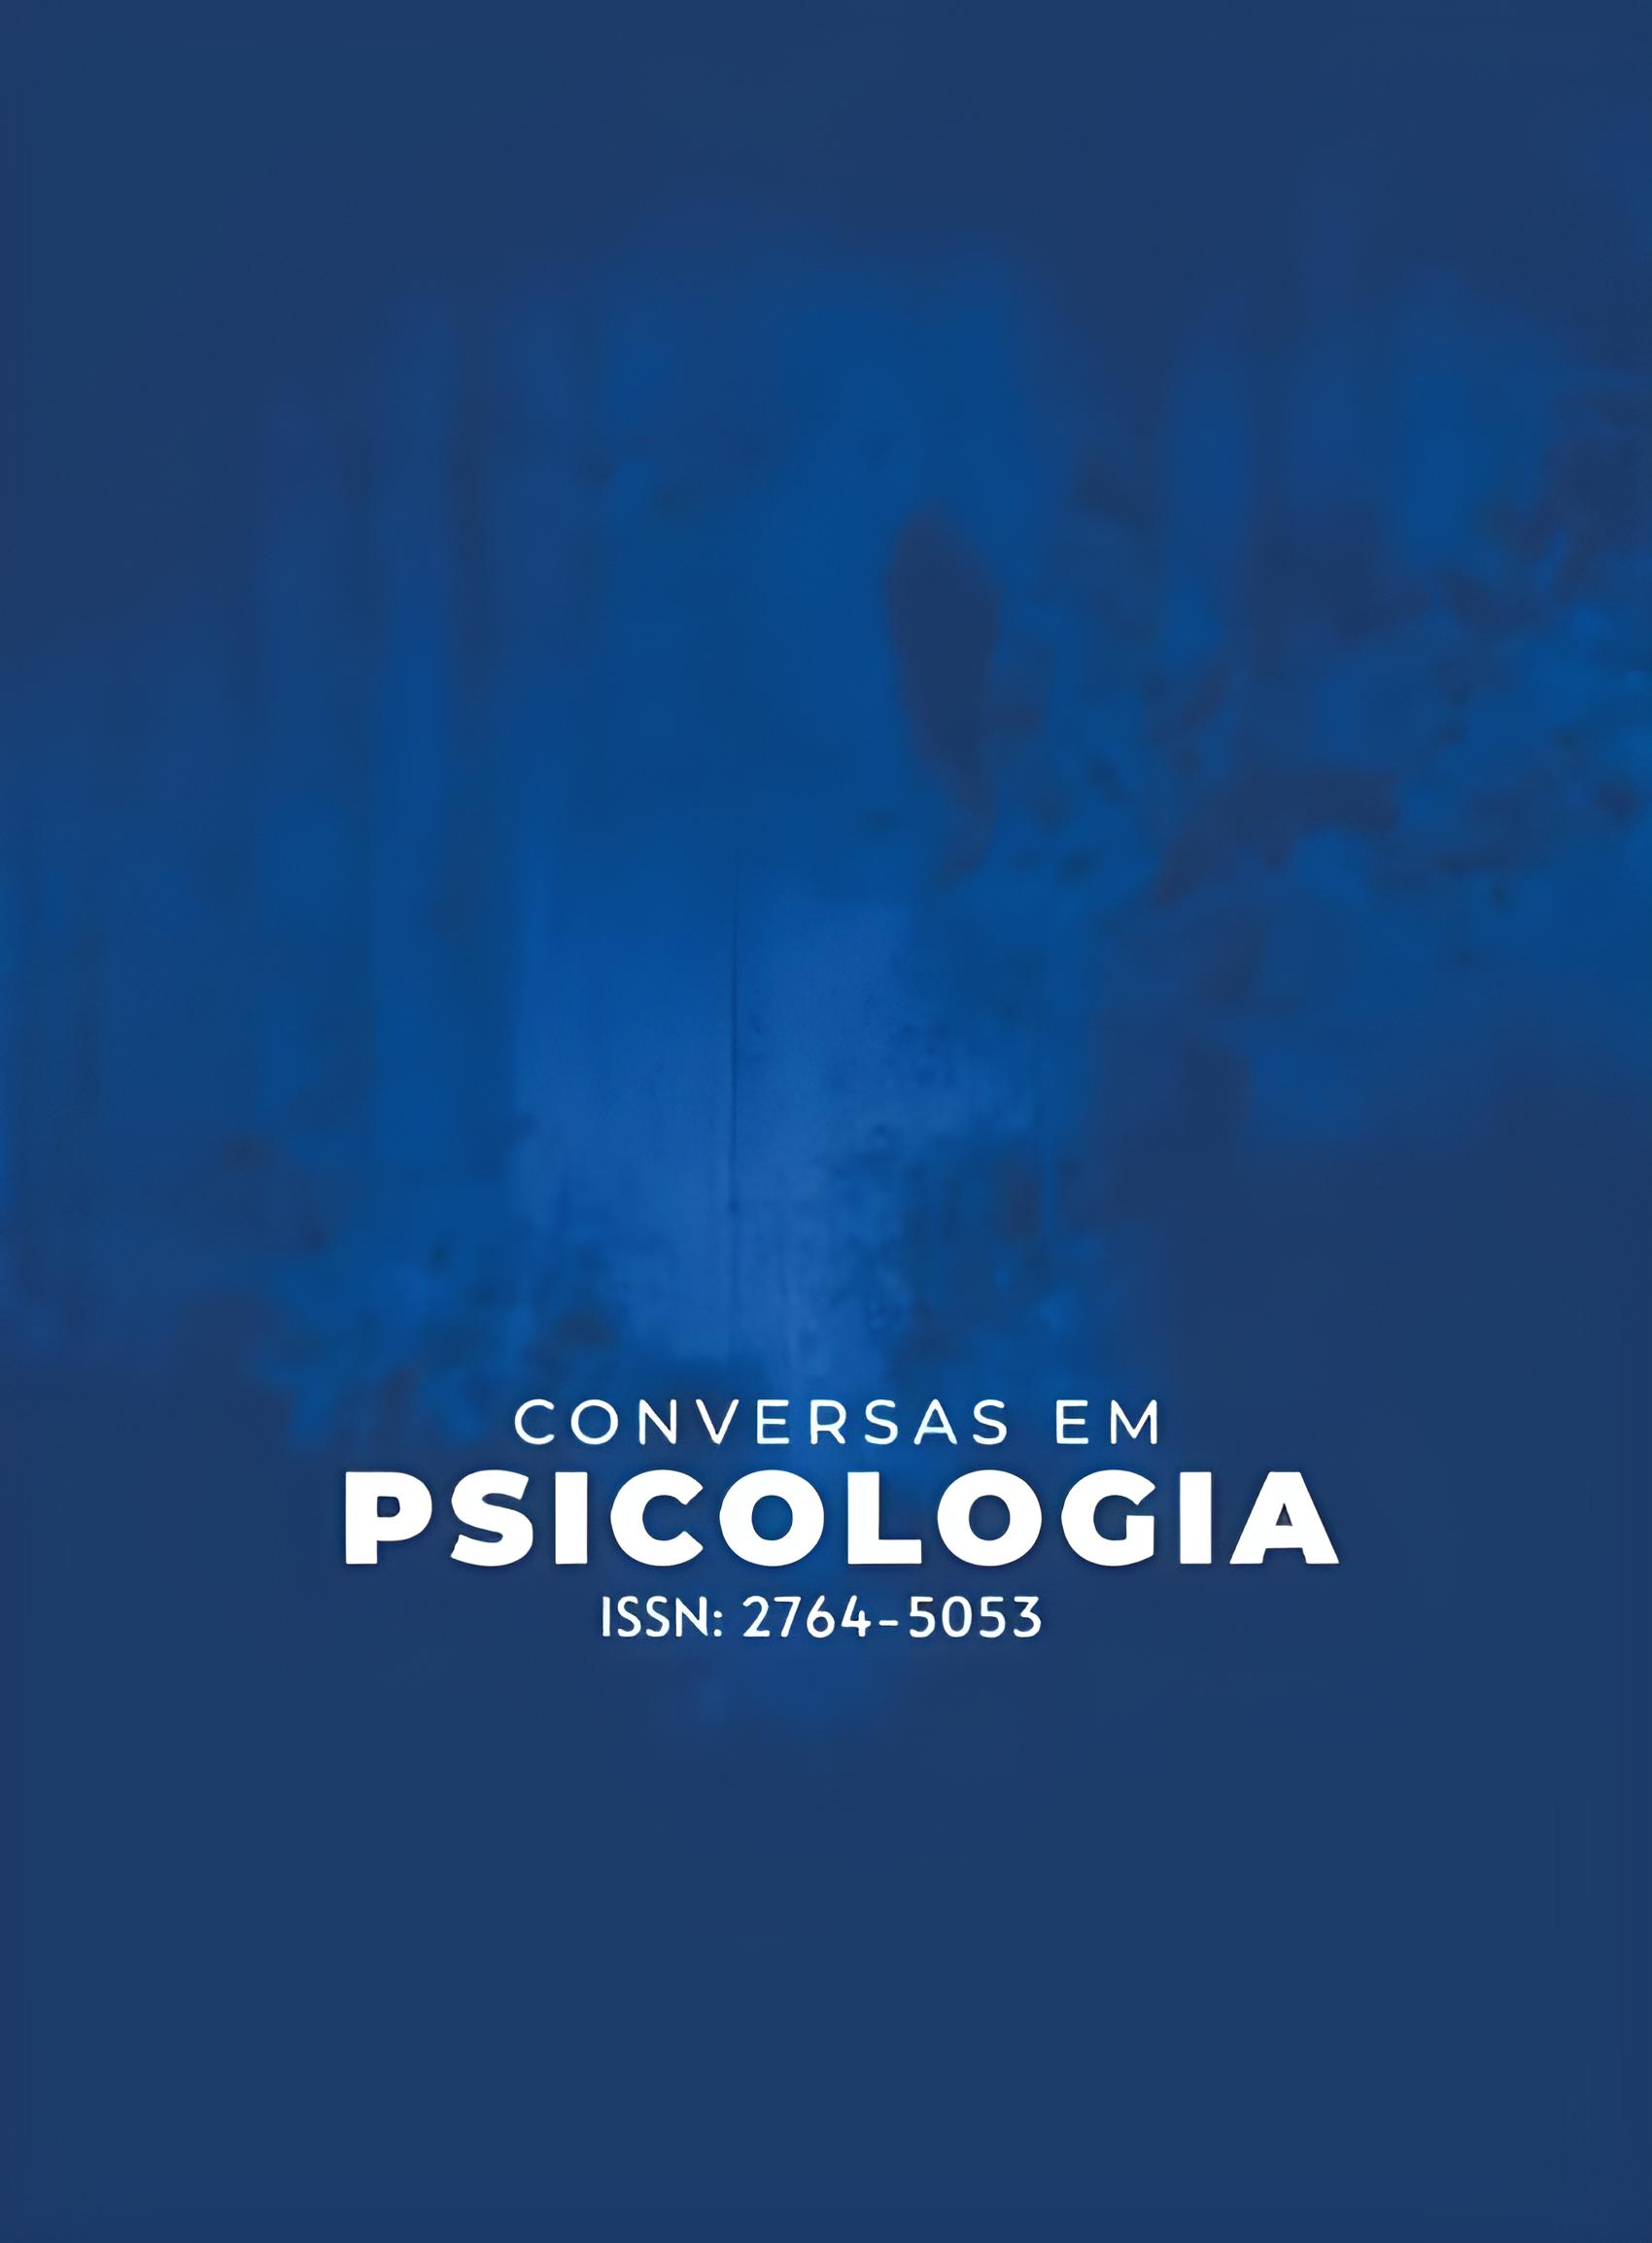 Imagem com fundo azul em que consta escrito no centro: Conversas em Psicologia ISSN 2764-5053